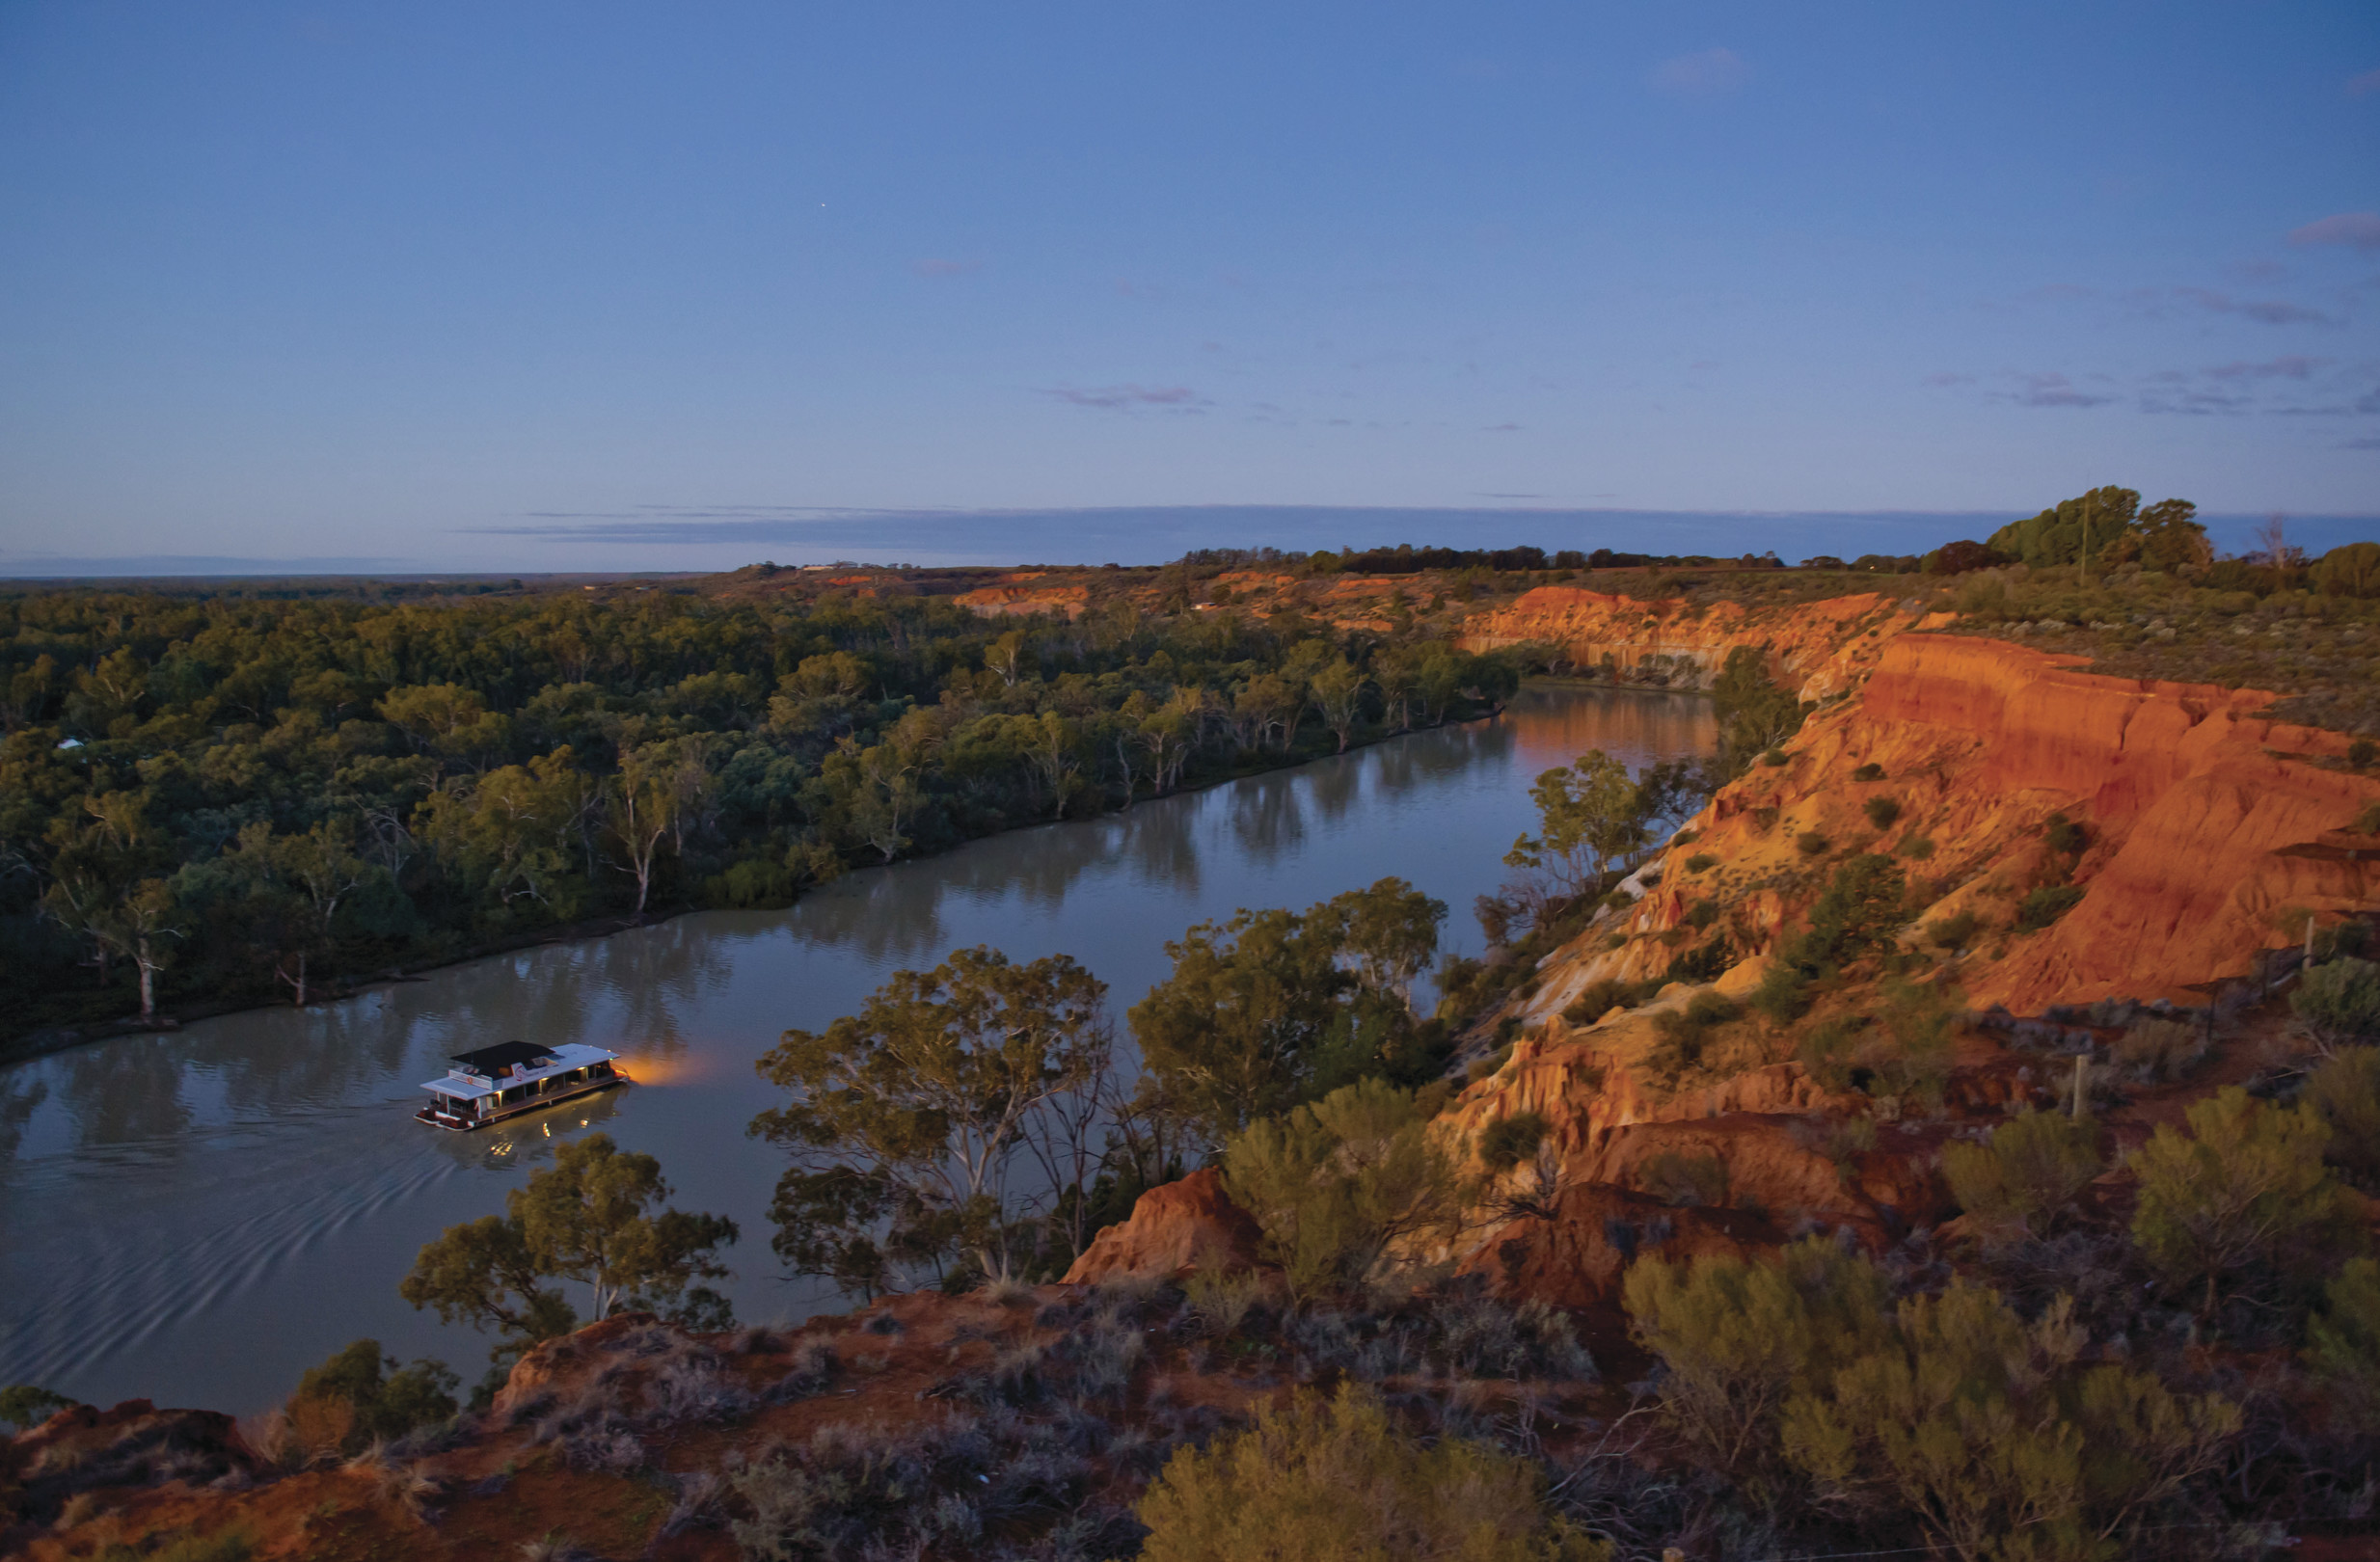 Австралия направление рек. Муррей и Дарлинг. Река Муррей в Австралии. Река Муррей,река Дарлинг. Реки Дарлинг и Муррей.